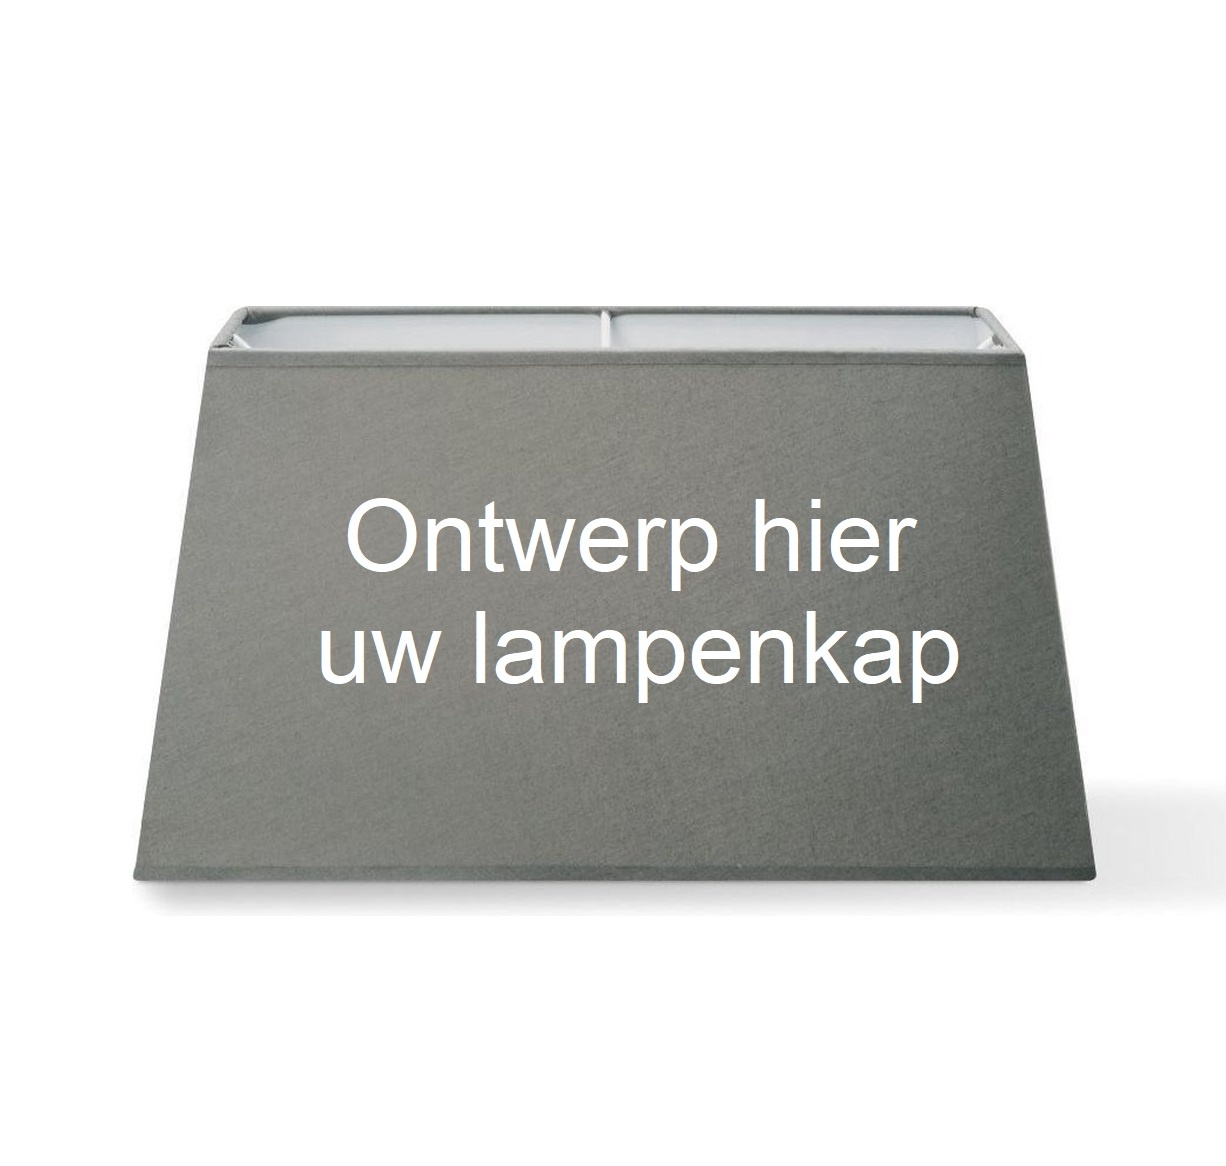 Soedan Om toevlucht te zoeken gespannen Lampenkap op maat online bestellen? - Lampentoppers.nl - Lampentoppers.nl